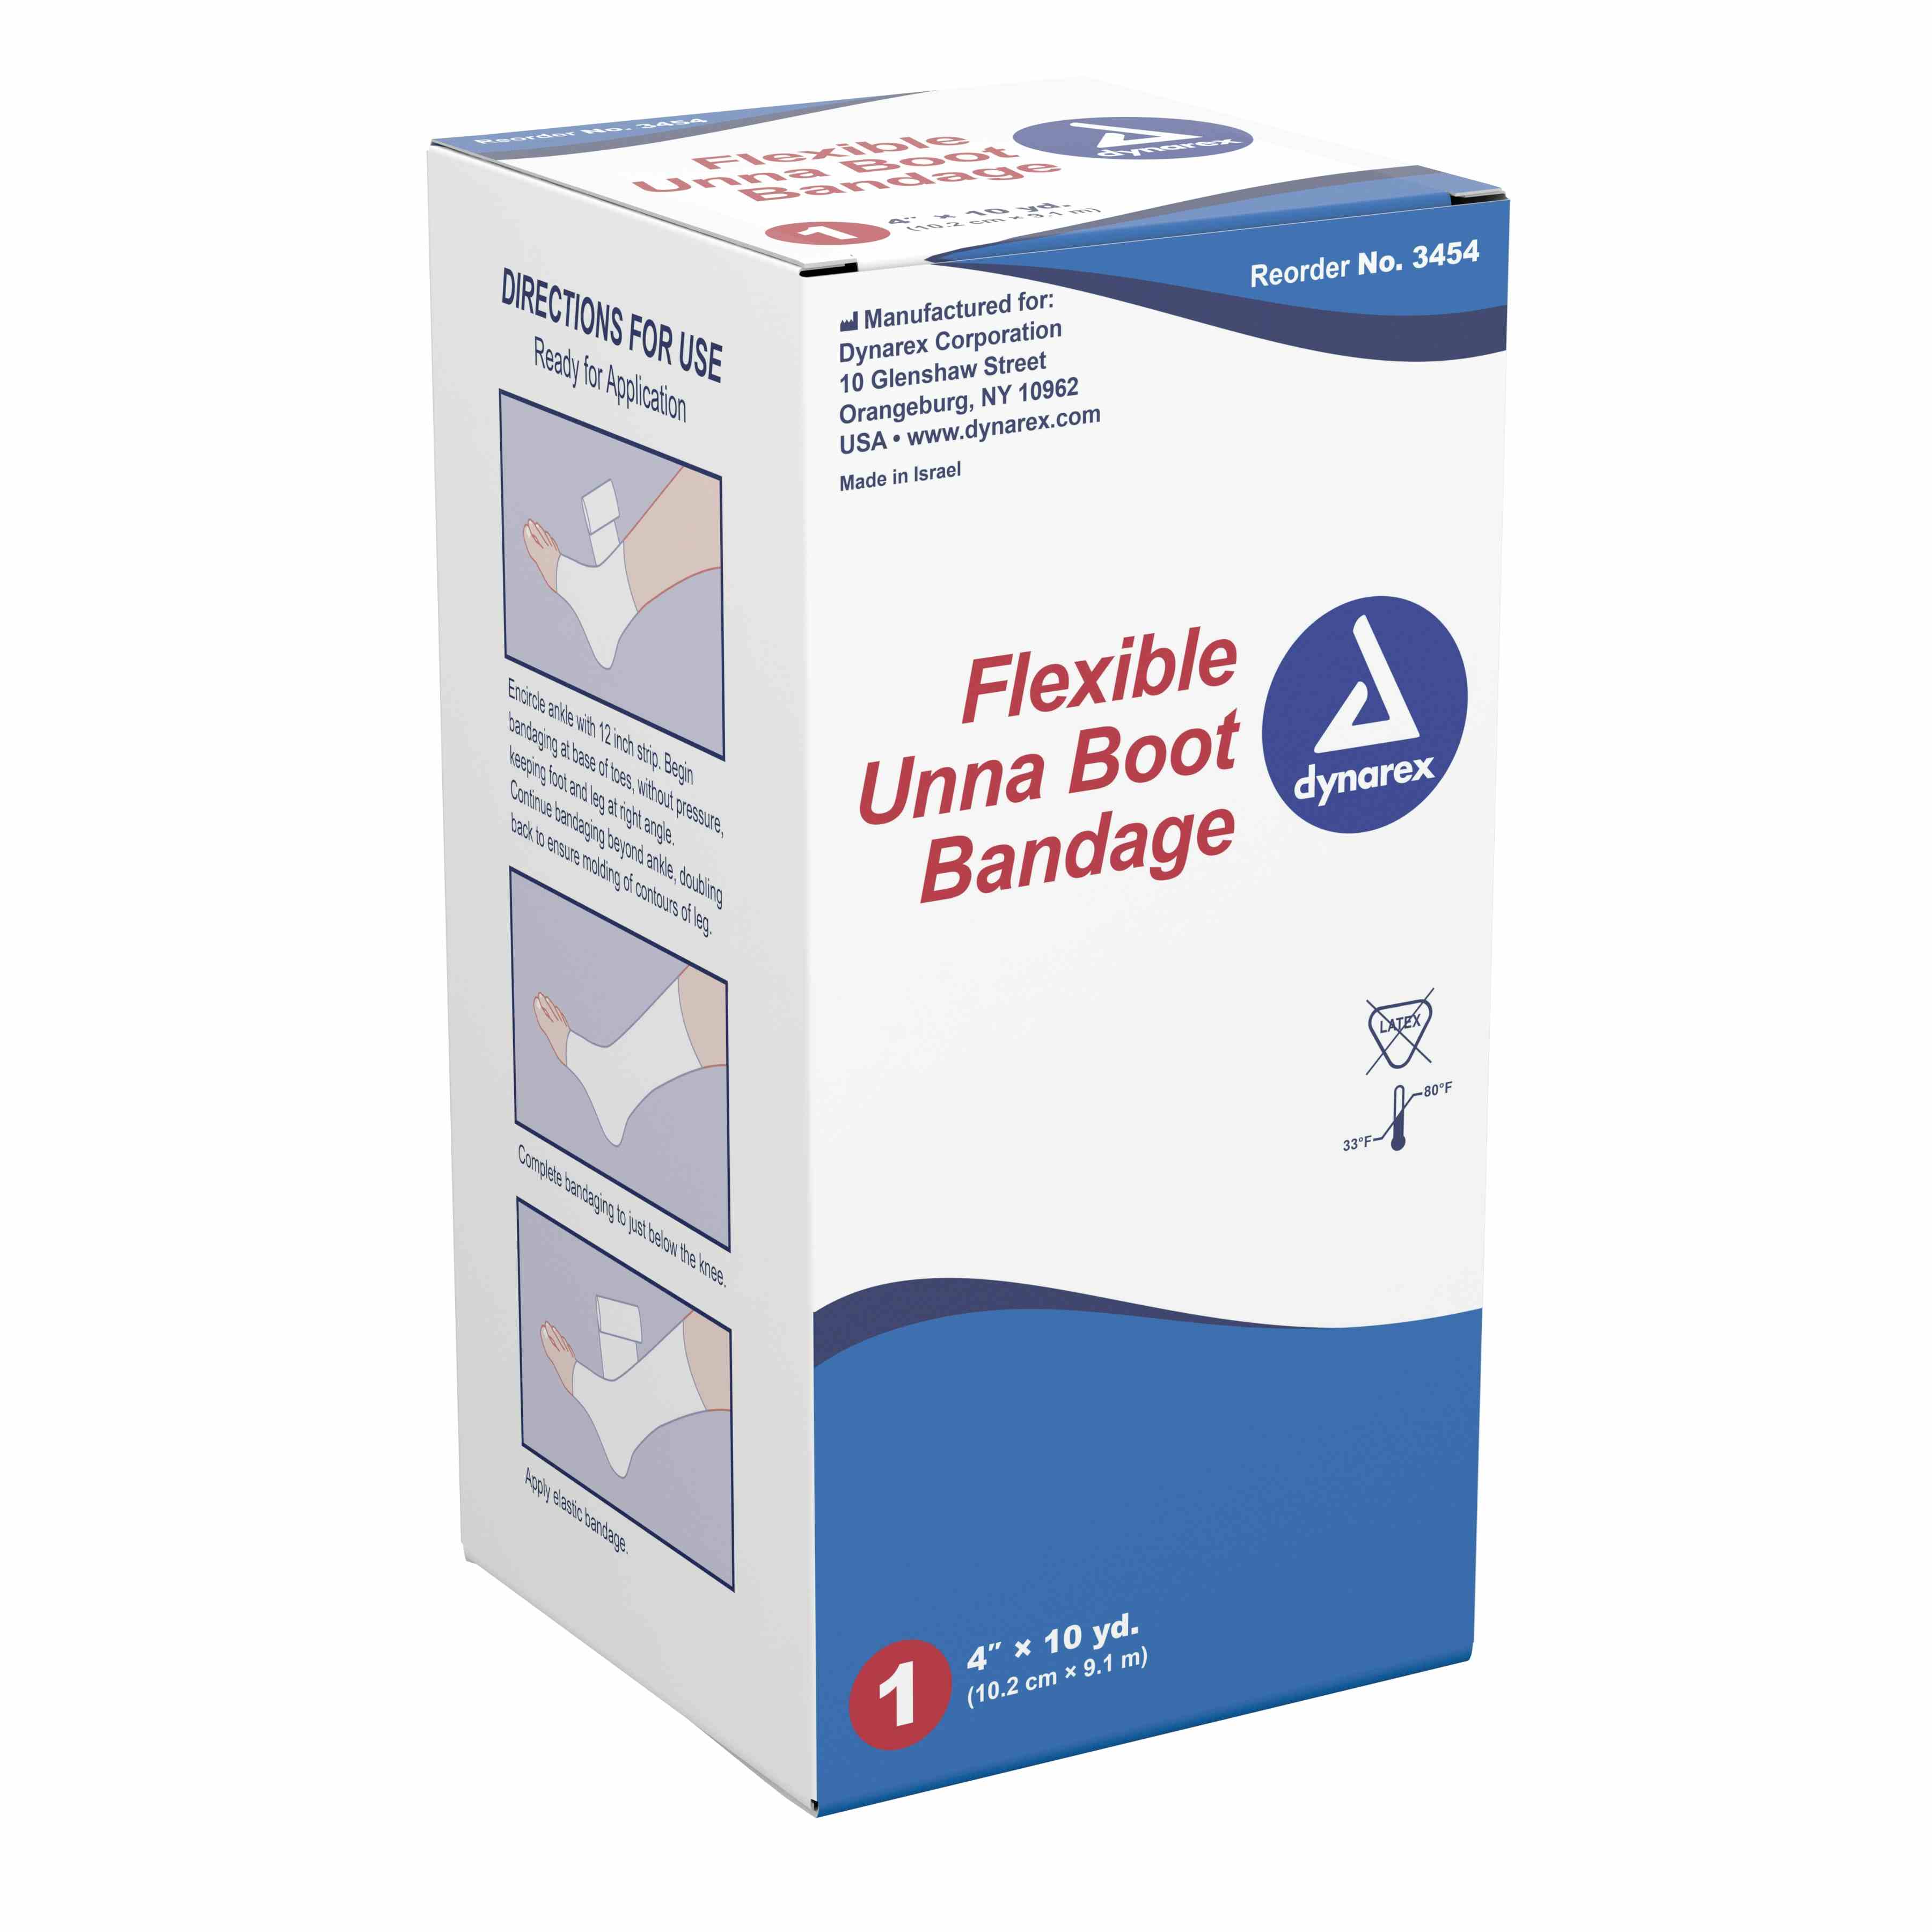 Dynarex Flexible Unna Boot Bandage, 4" X 10 yd, 3454, 1 Each